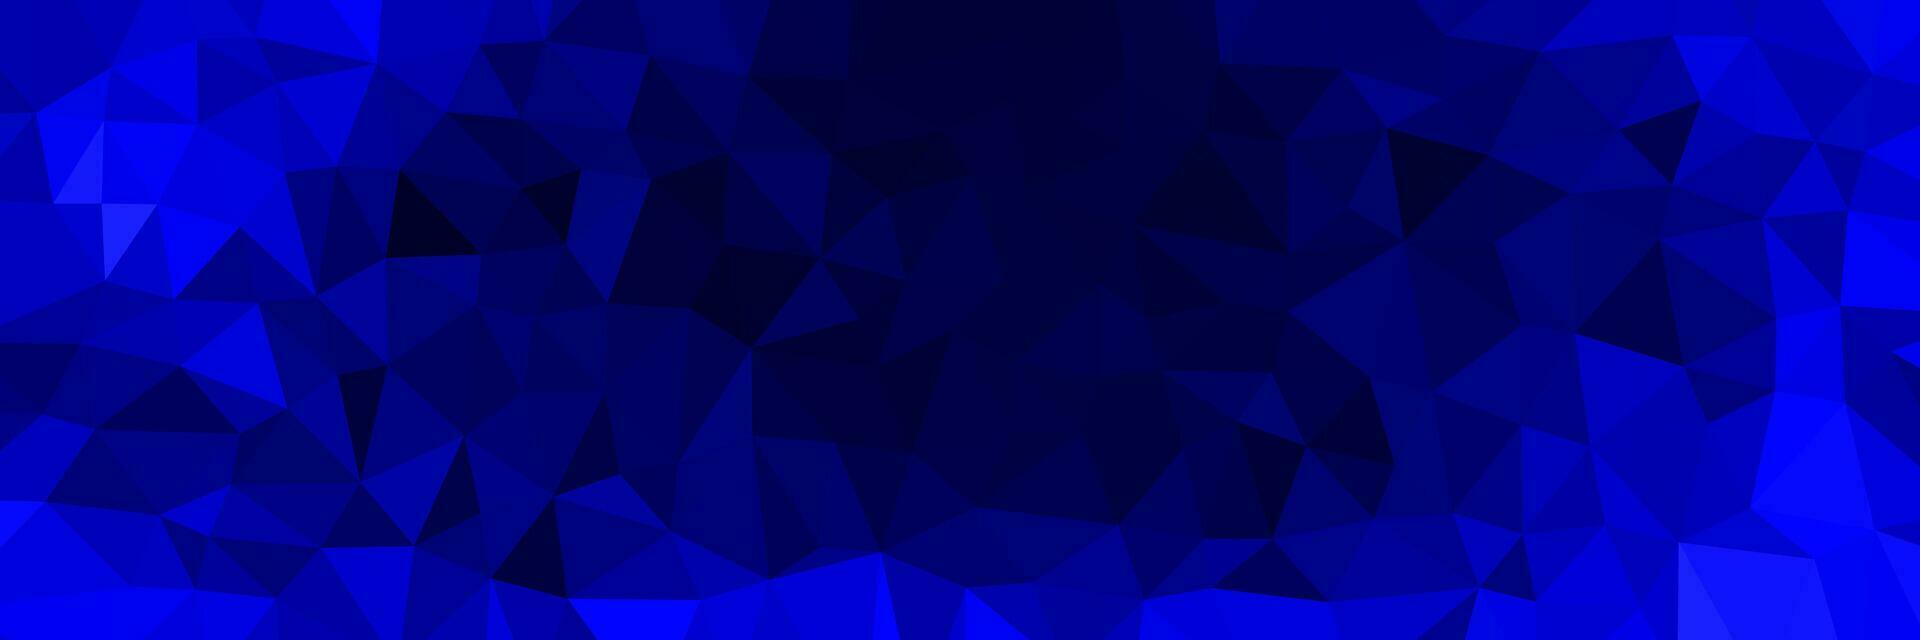 abstract blauw driehoeken achtergrond voor ontwerp vector